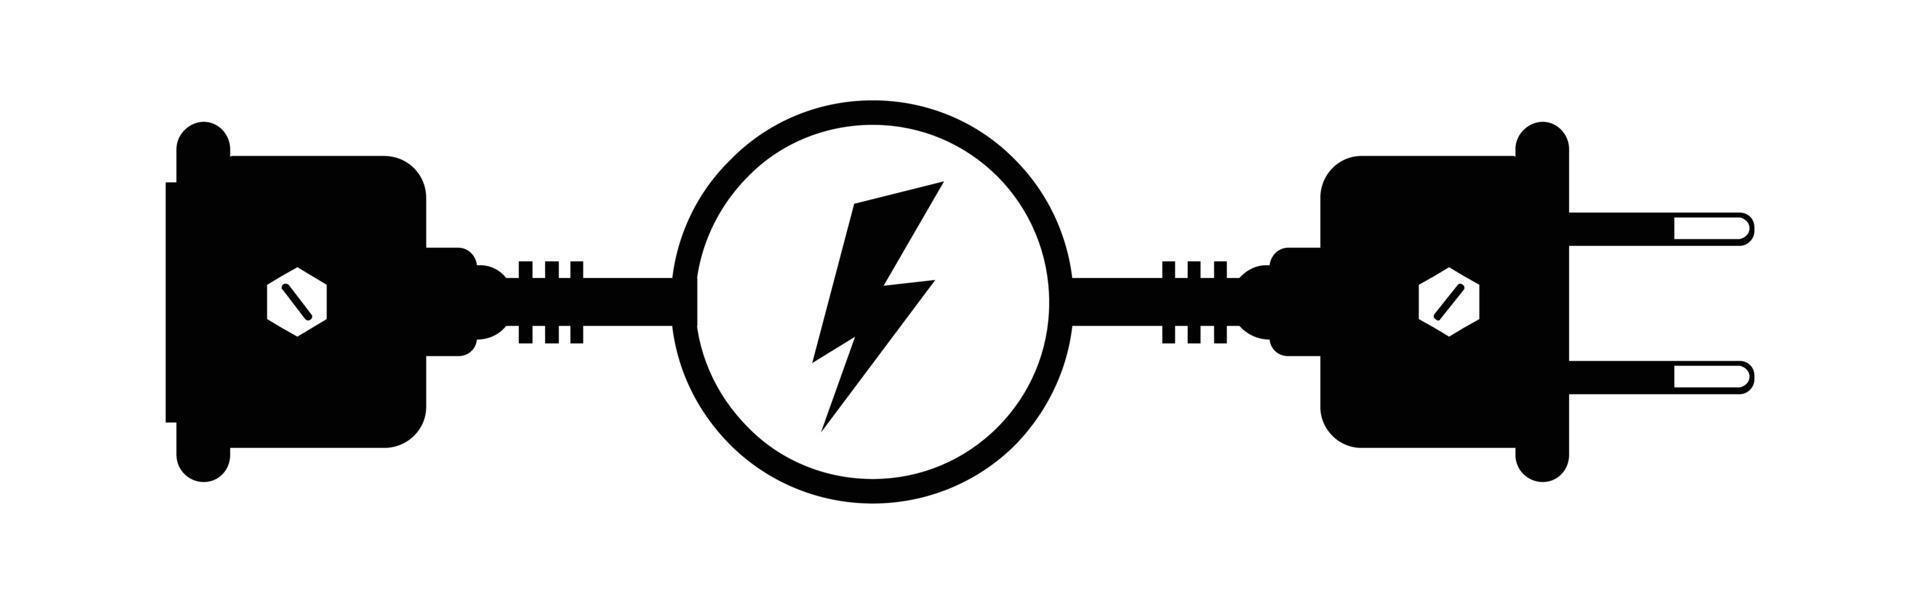 vettore elettrico spina e presa presa di corrente scollegato. cavo di energia disconnect vettore illustrazione